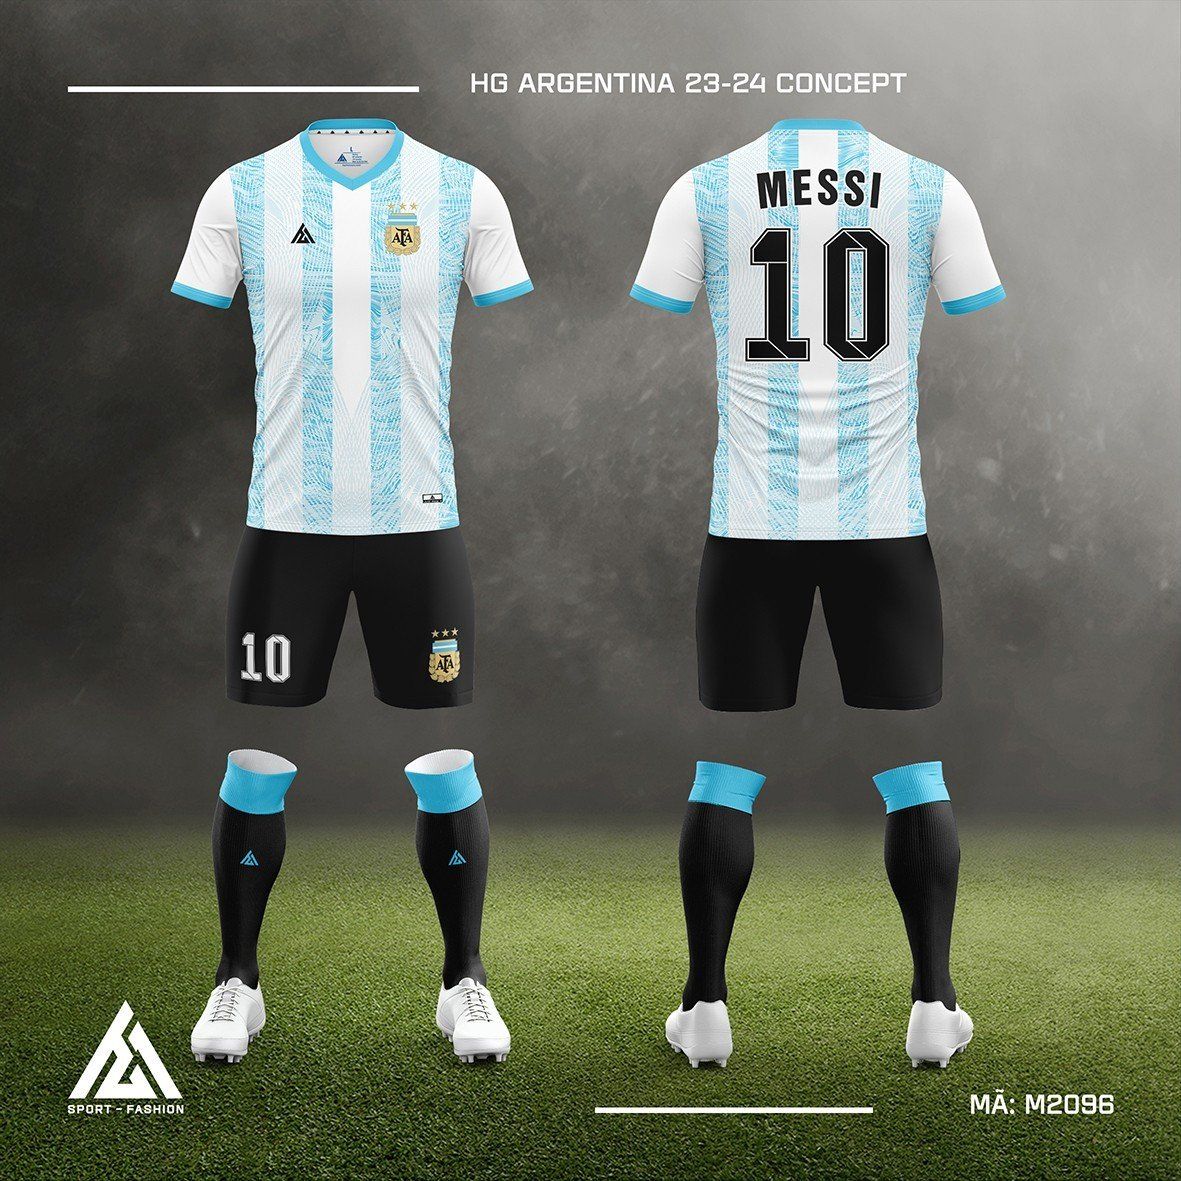  Bộ bóng đá đội tuyển Argentina 23-24 Concept M2096 